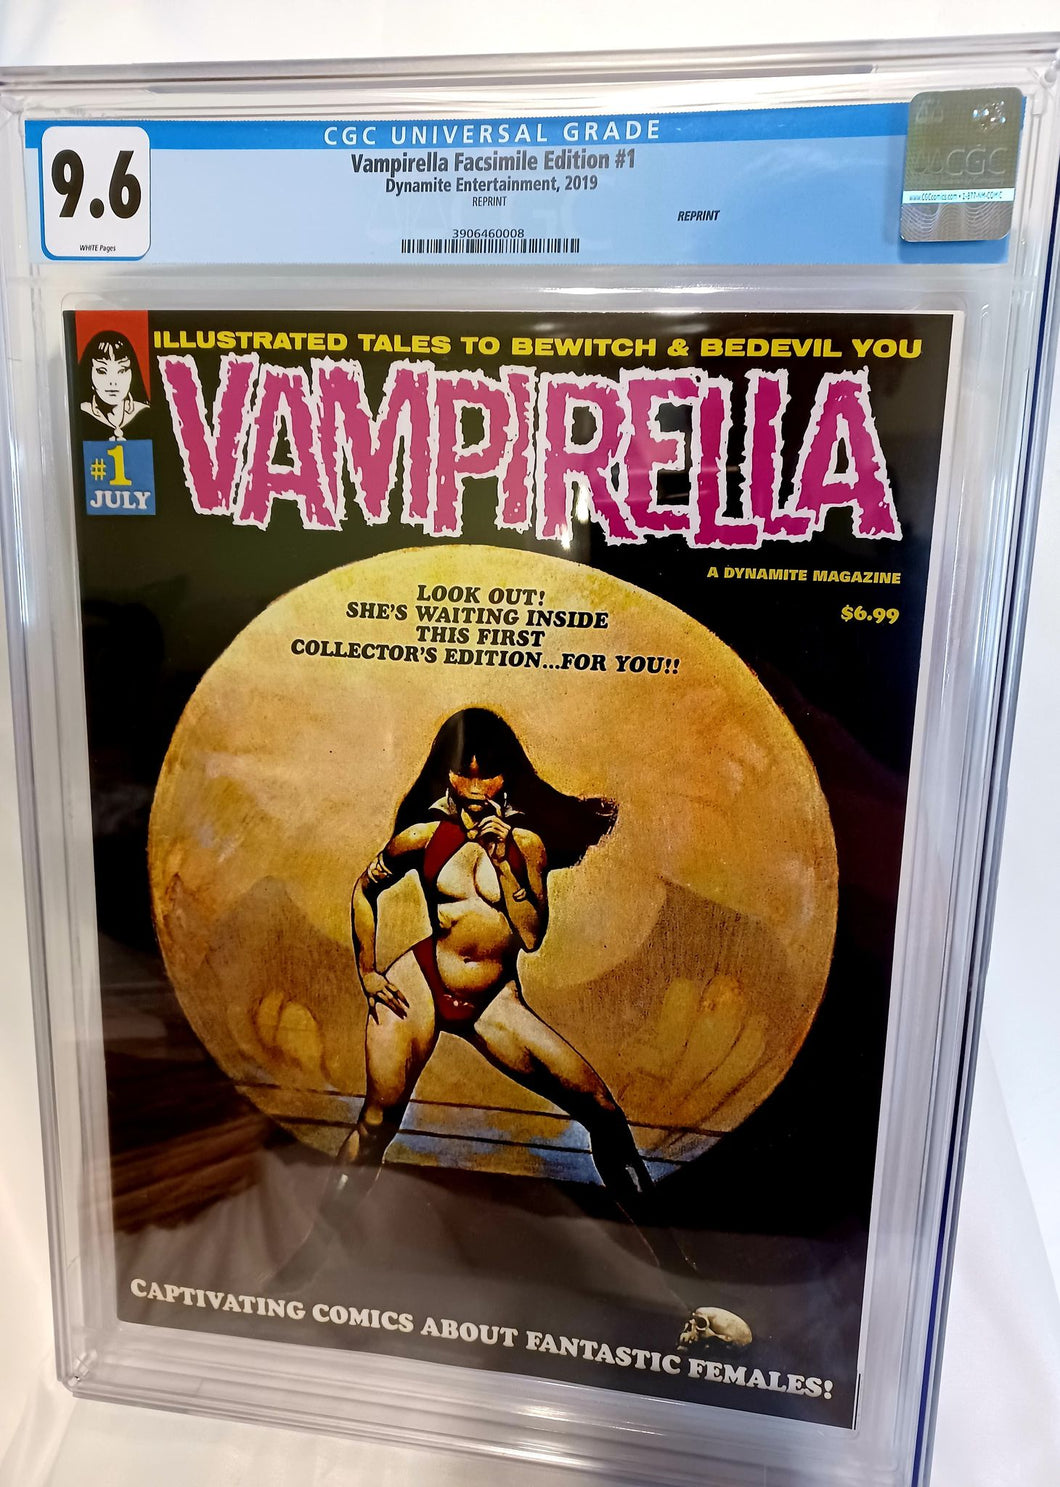 Vampirella #1 Facsimile Edition CGC 9.6 - Frank Frazetta cover